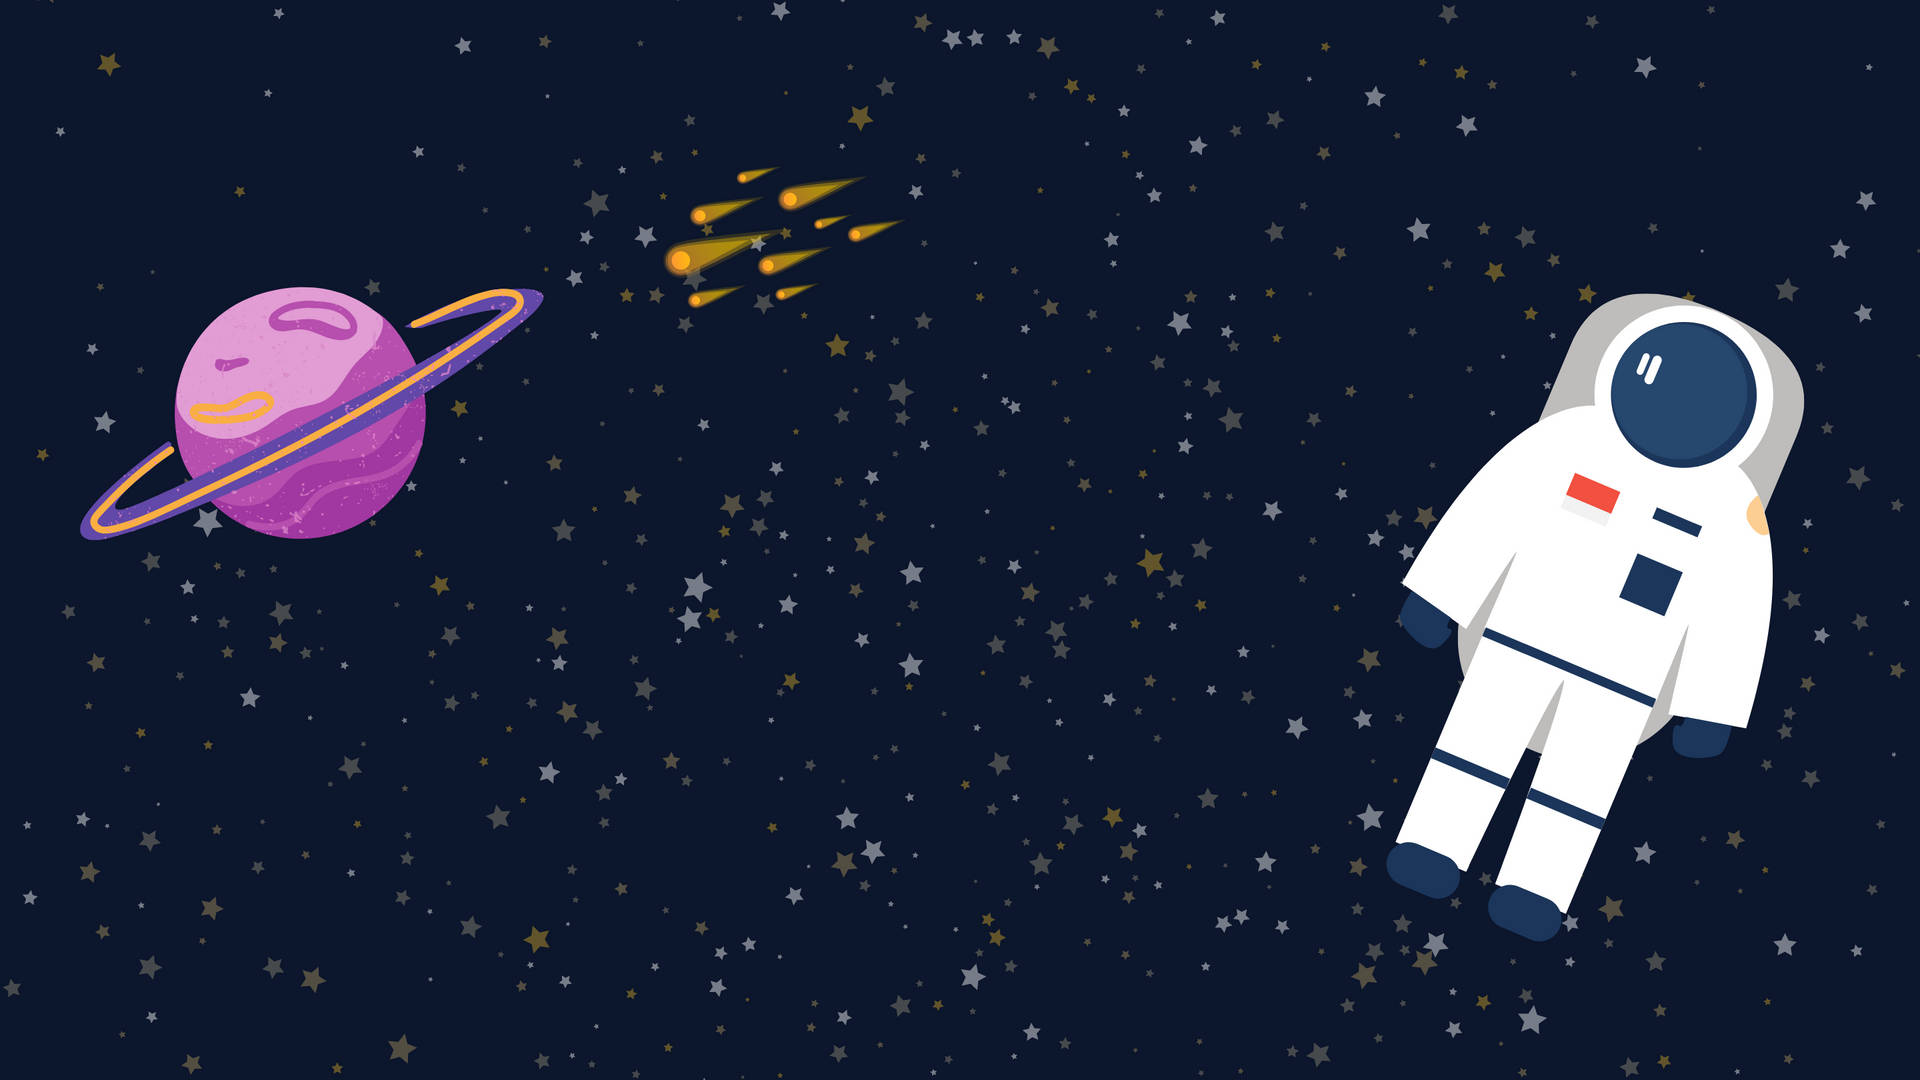 Astronaut Waiting Comet Collision Art Wallpaper